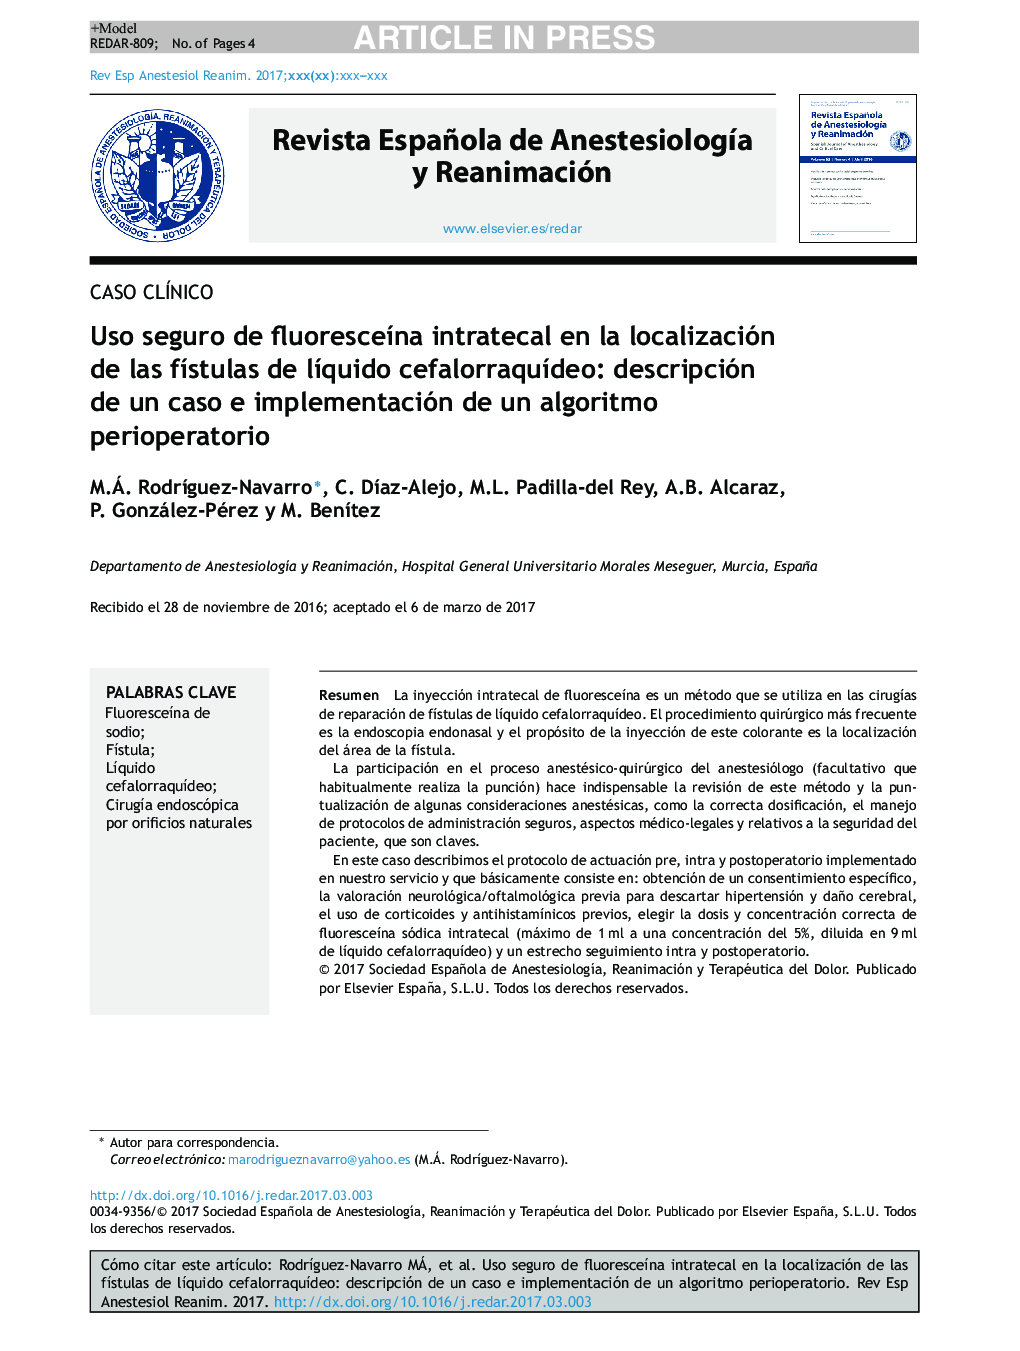 Uso seguro de fluoresceÃ­na intratecal en la localización de las fÃ­stulas de lÃ­quido cefalorraquÃ­deo: descripción de un caso e implementación de un algoritmo perioperatorio